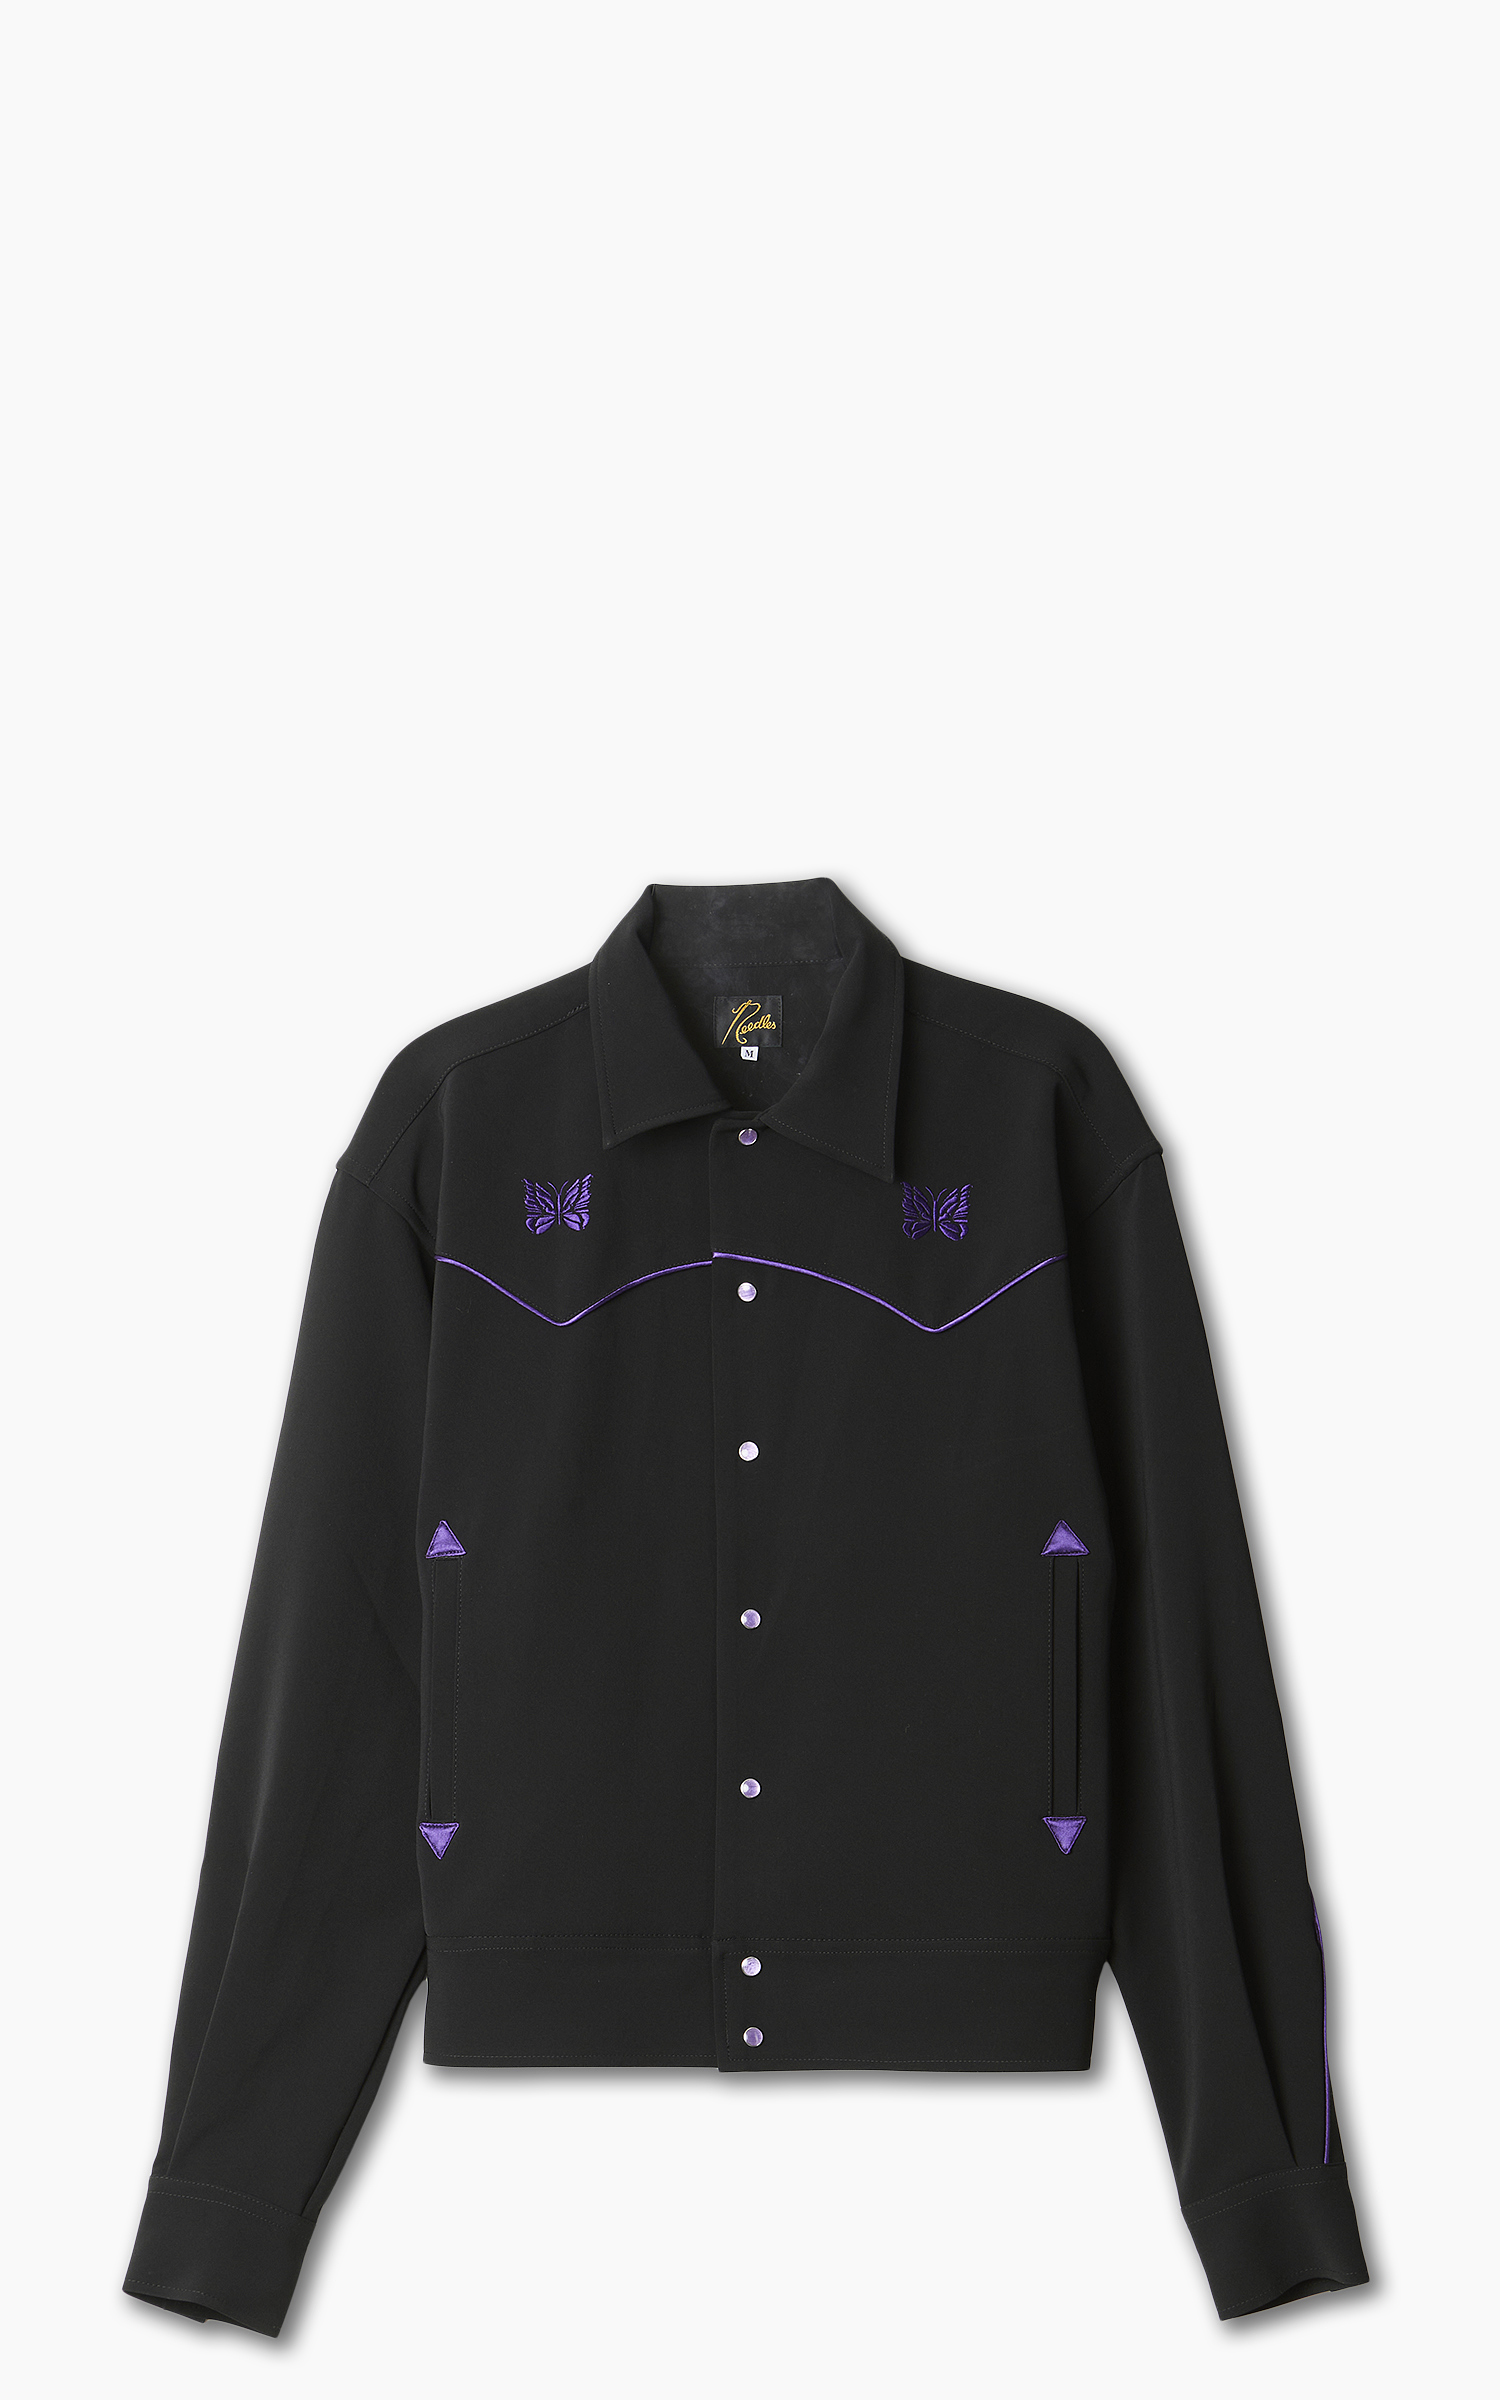 cowboy jacket M ブラック パープル 黒 紫 売り出し新品 メンズ